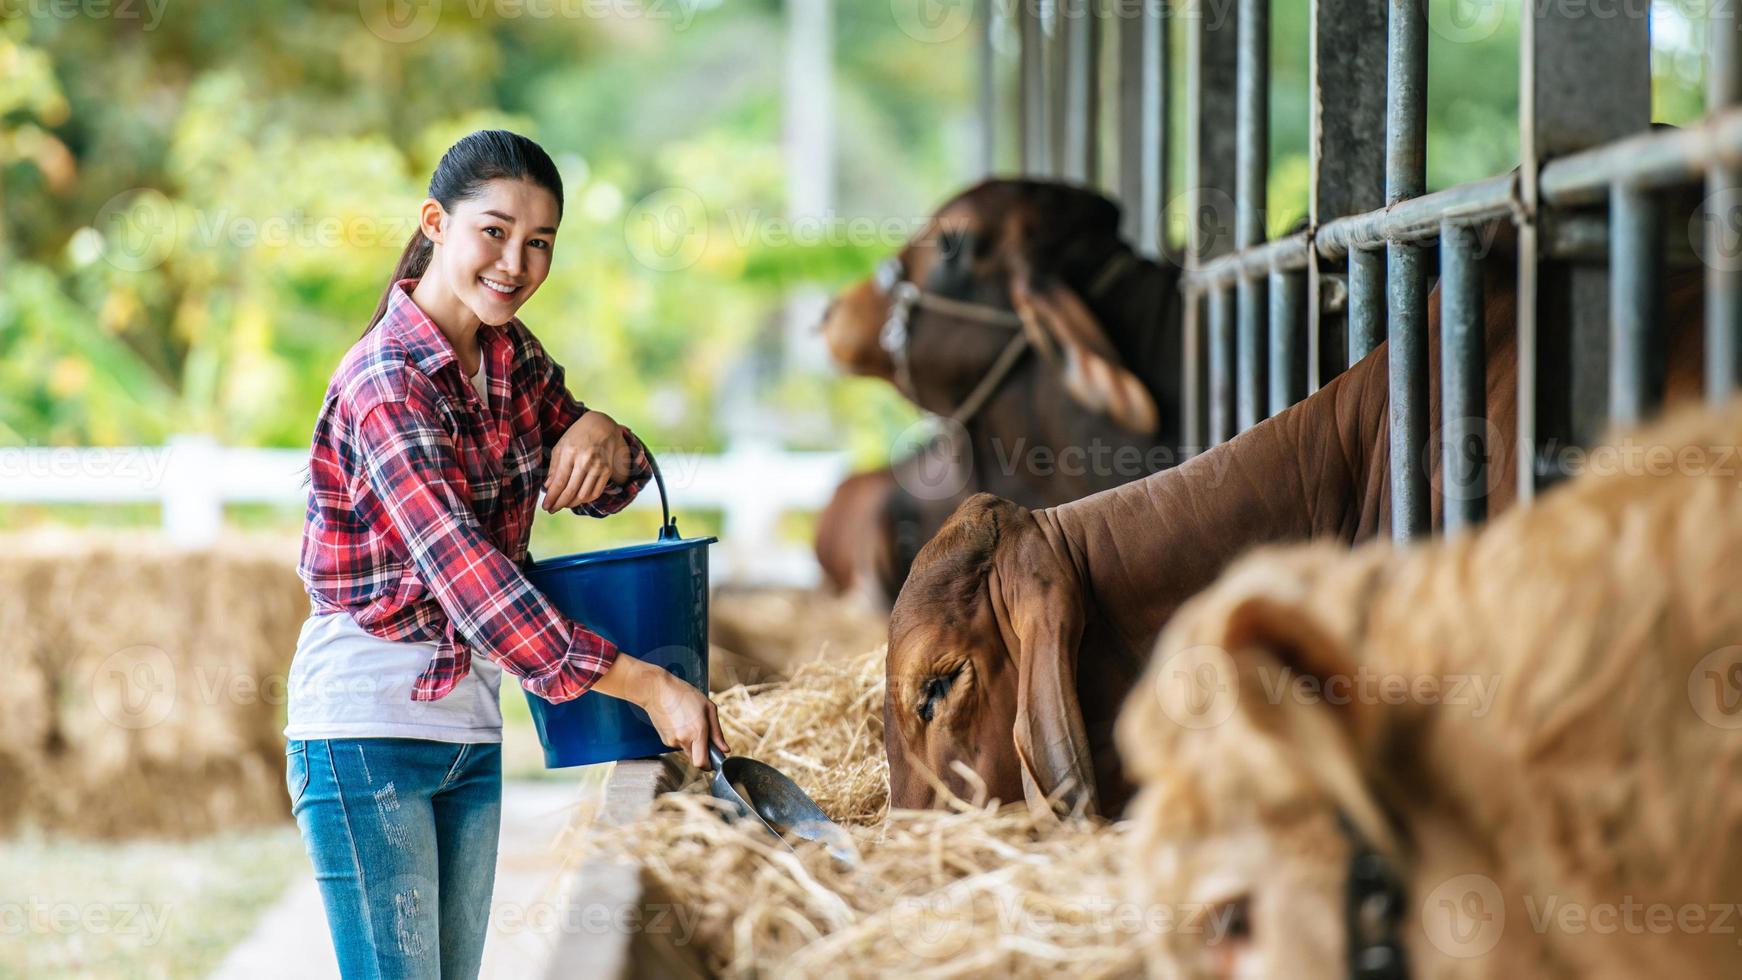 portrait d'une agricultrice asiatique heureuse avec un seau de foin nourrissant des vaches dans une étable sur une ferme laitière. industrie agricole, agriculture, personnes, technologie et concept d'élevage. photo